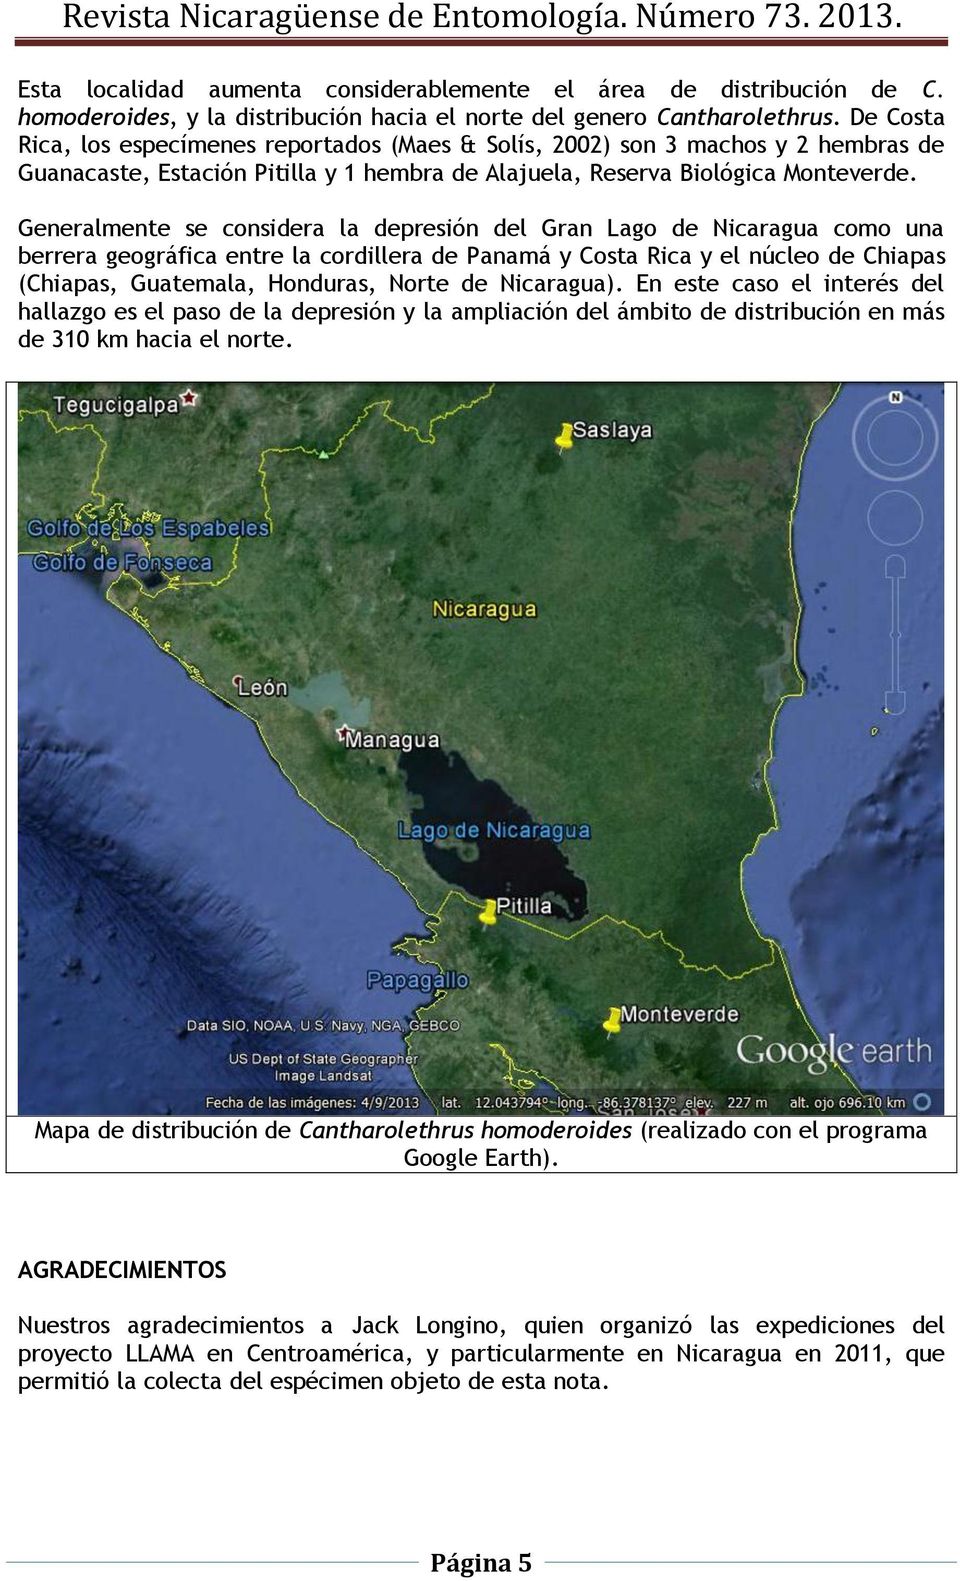 Generalmente se considera la depresión del Gran Lago de Nicaragua como una berrera geográfica entre la cordillera de Panamá y Costa Rica y el núcleo de Chiapas (Chiapas, Guatemala, Honduras, Norte de